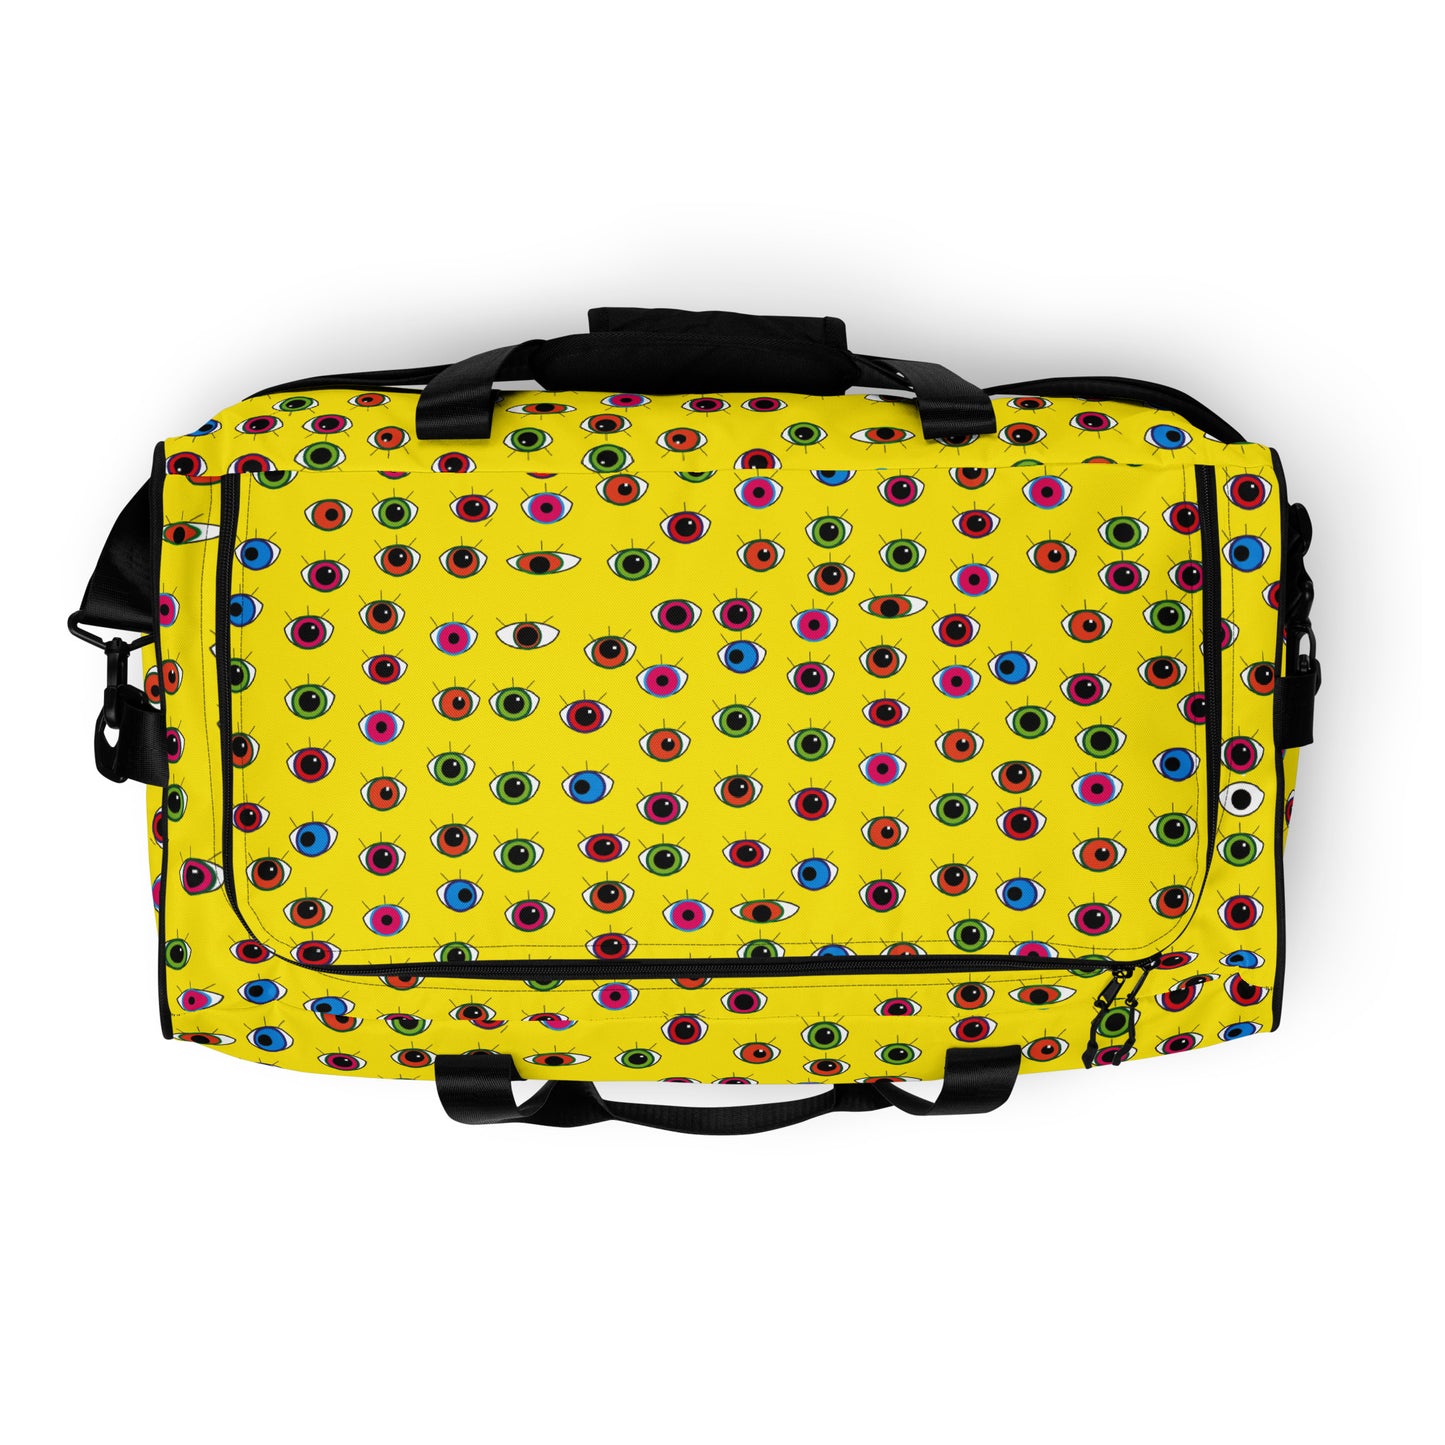 Duffle bag  (refBAGdb23c1008)